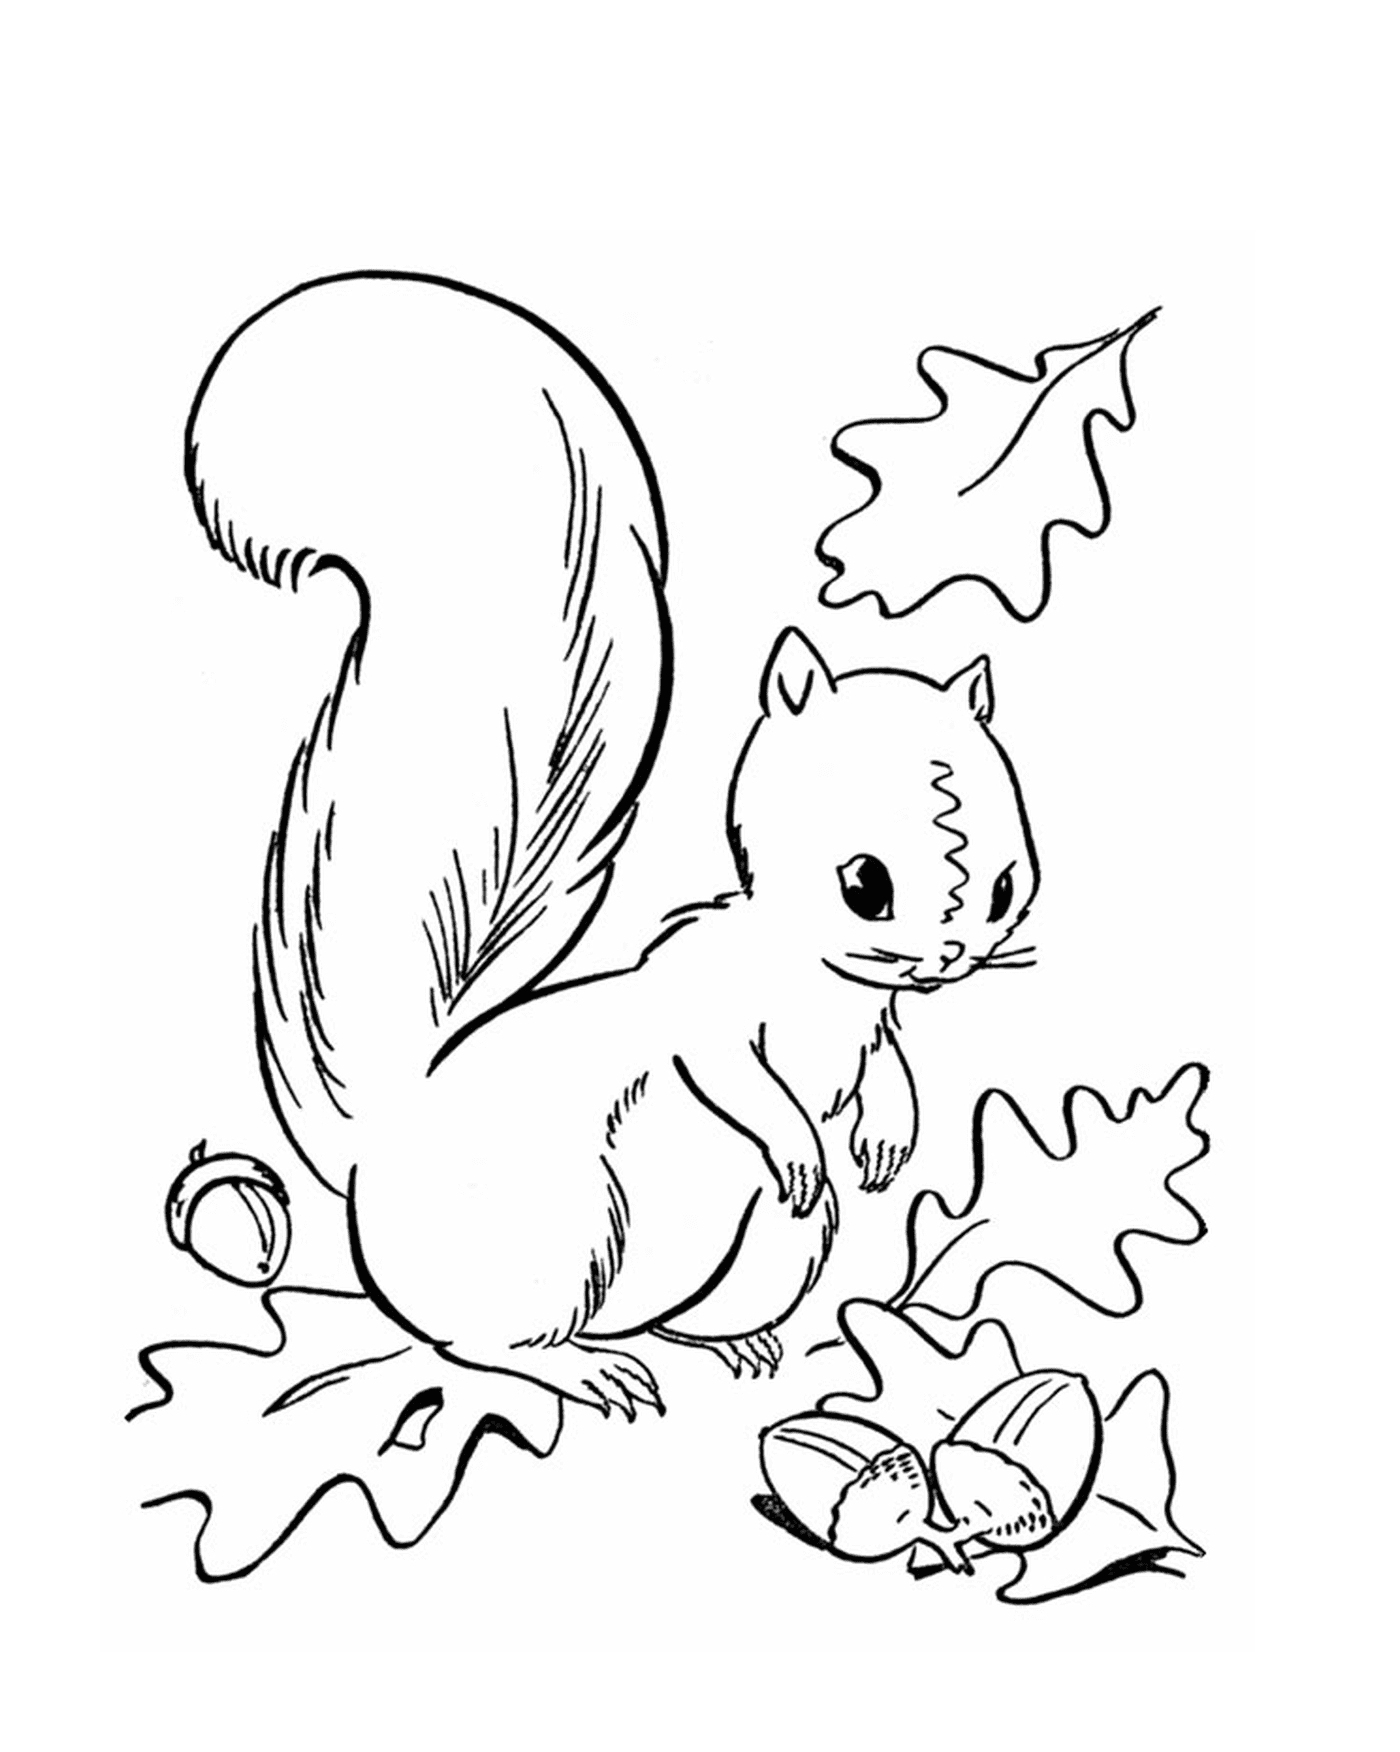  Uno scoiattolo 